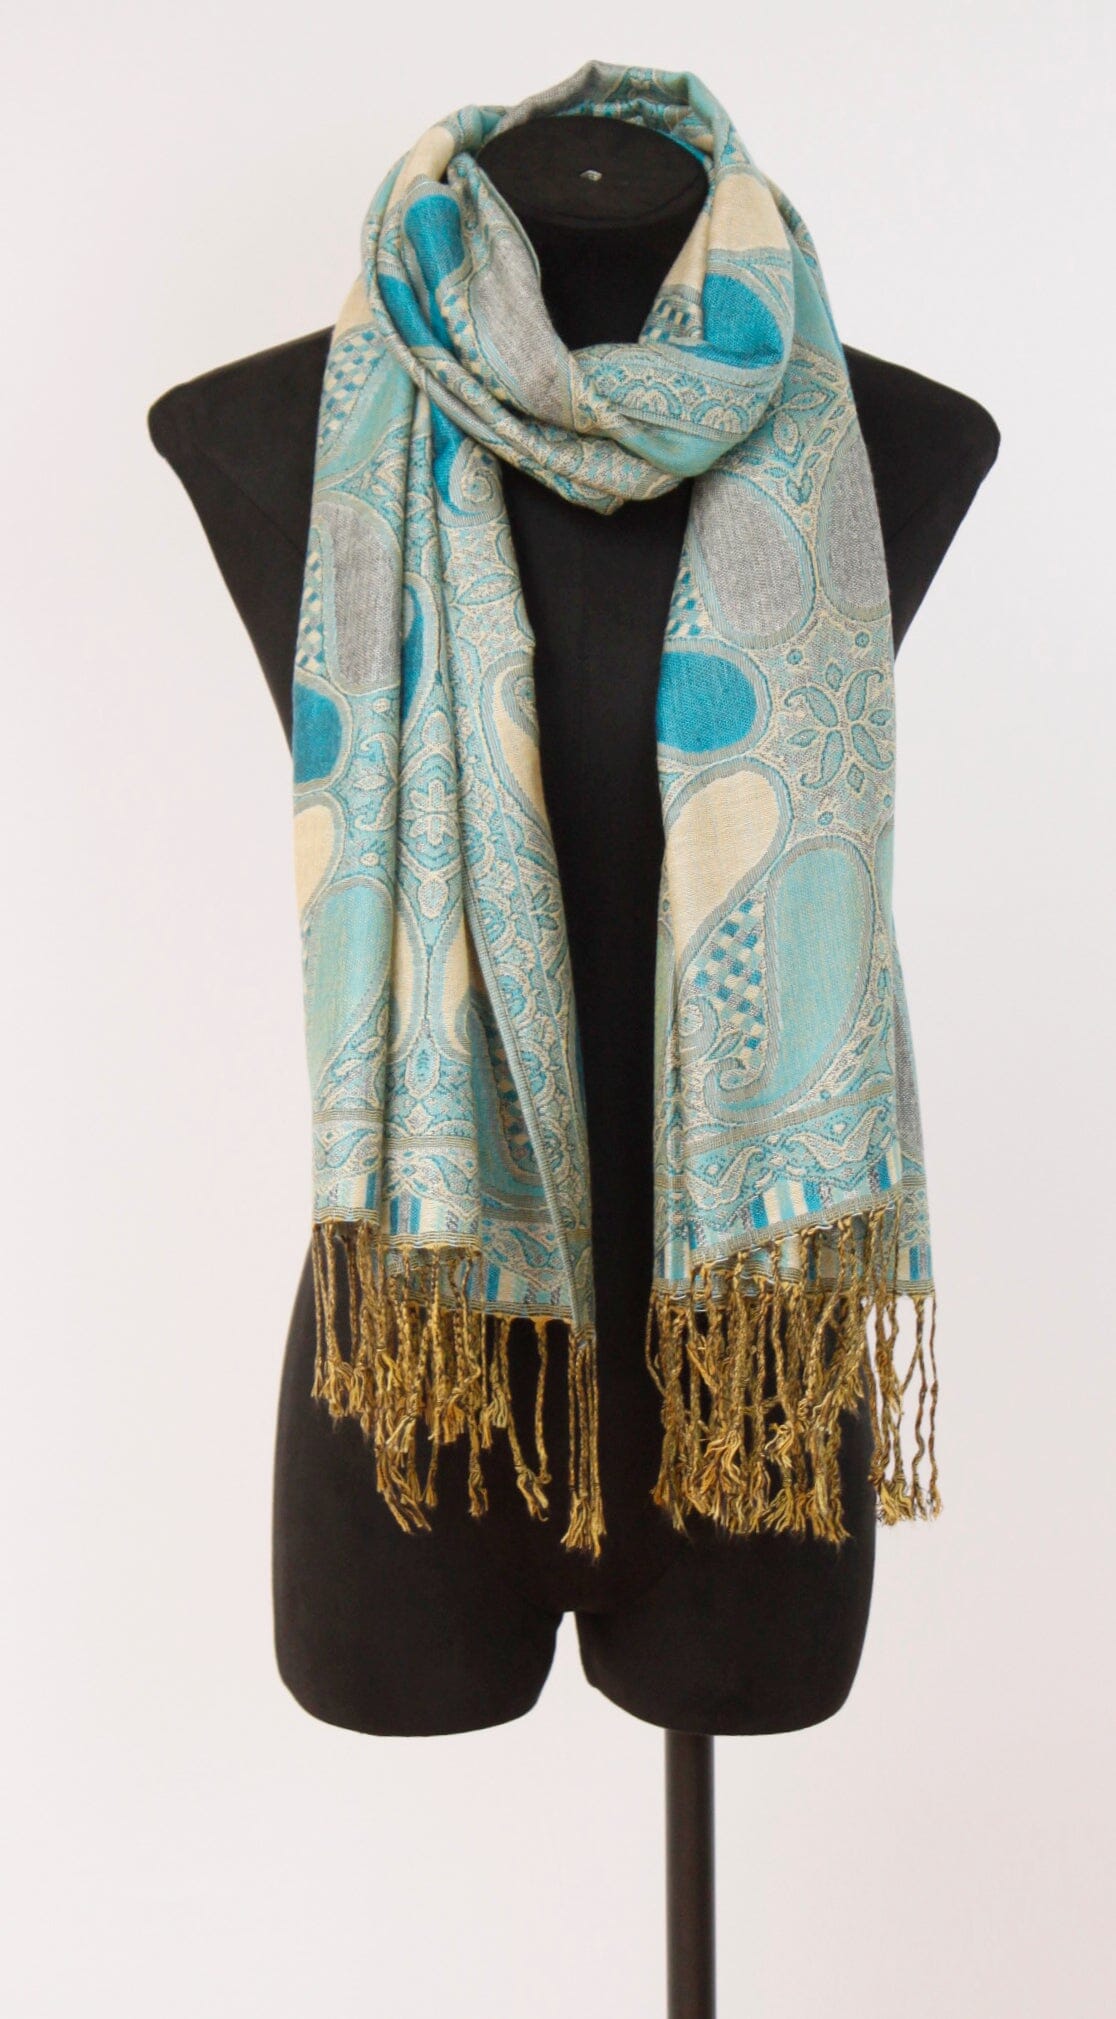 Echarpe Paisley Turquoise foulard 